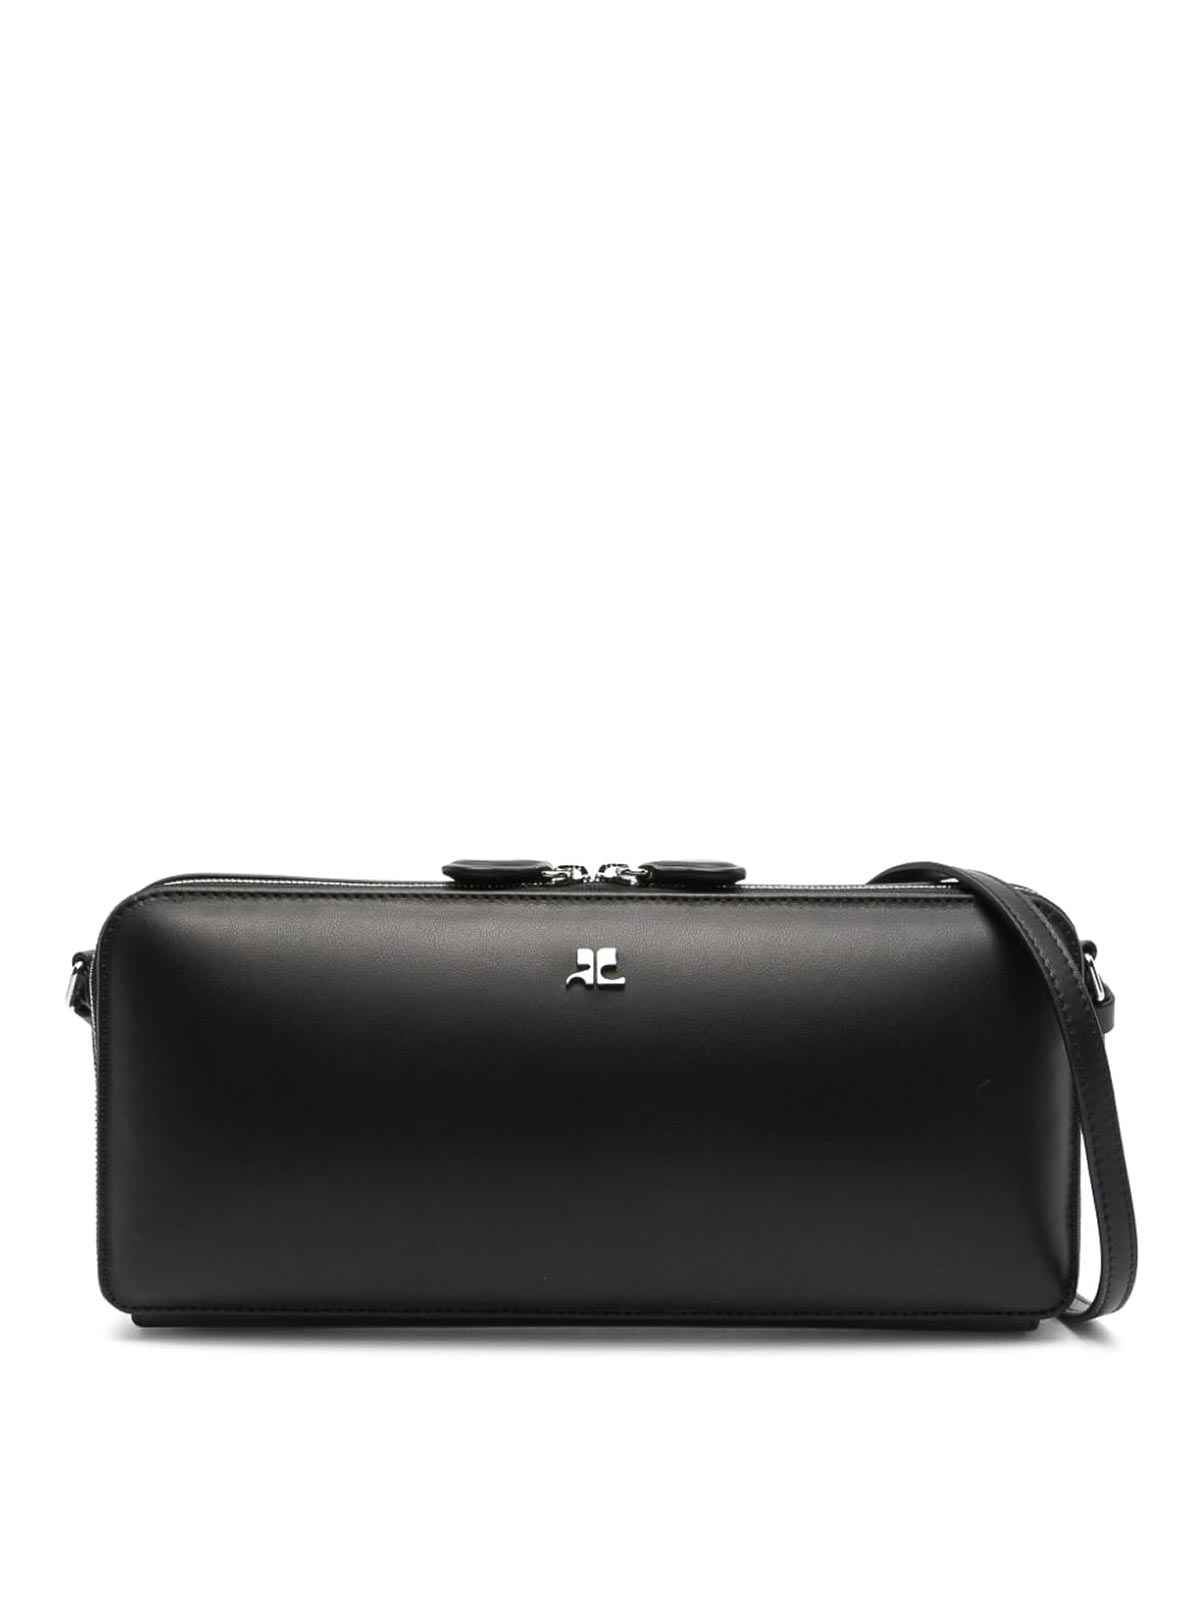 Courrèges Cloud Reflex Leather Baguette Bag In Black